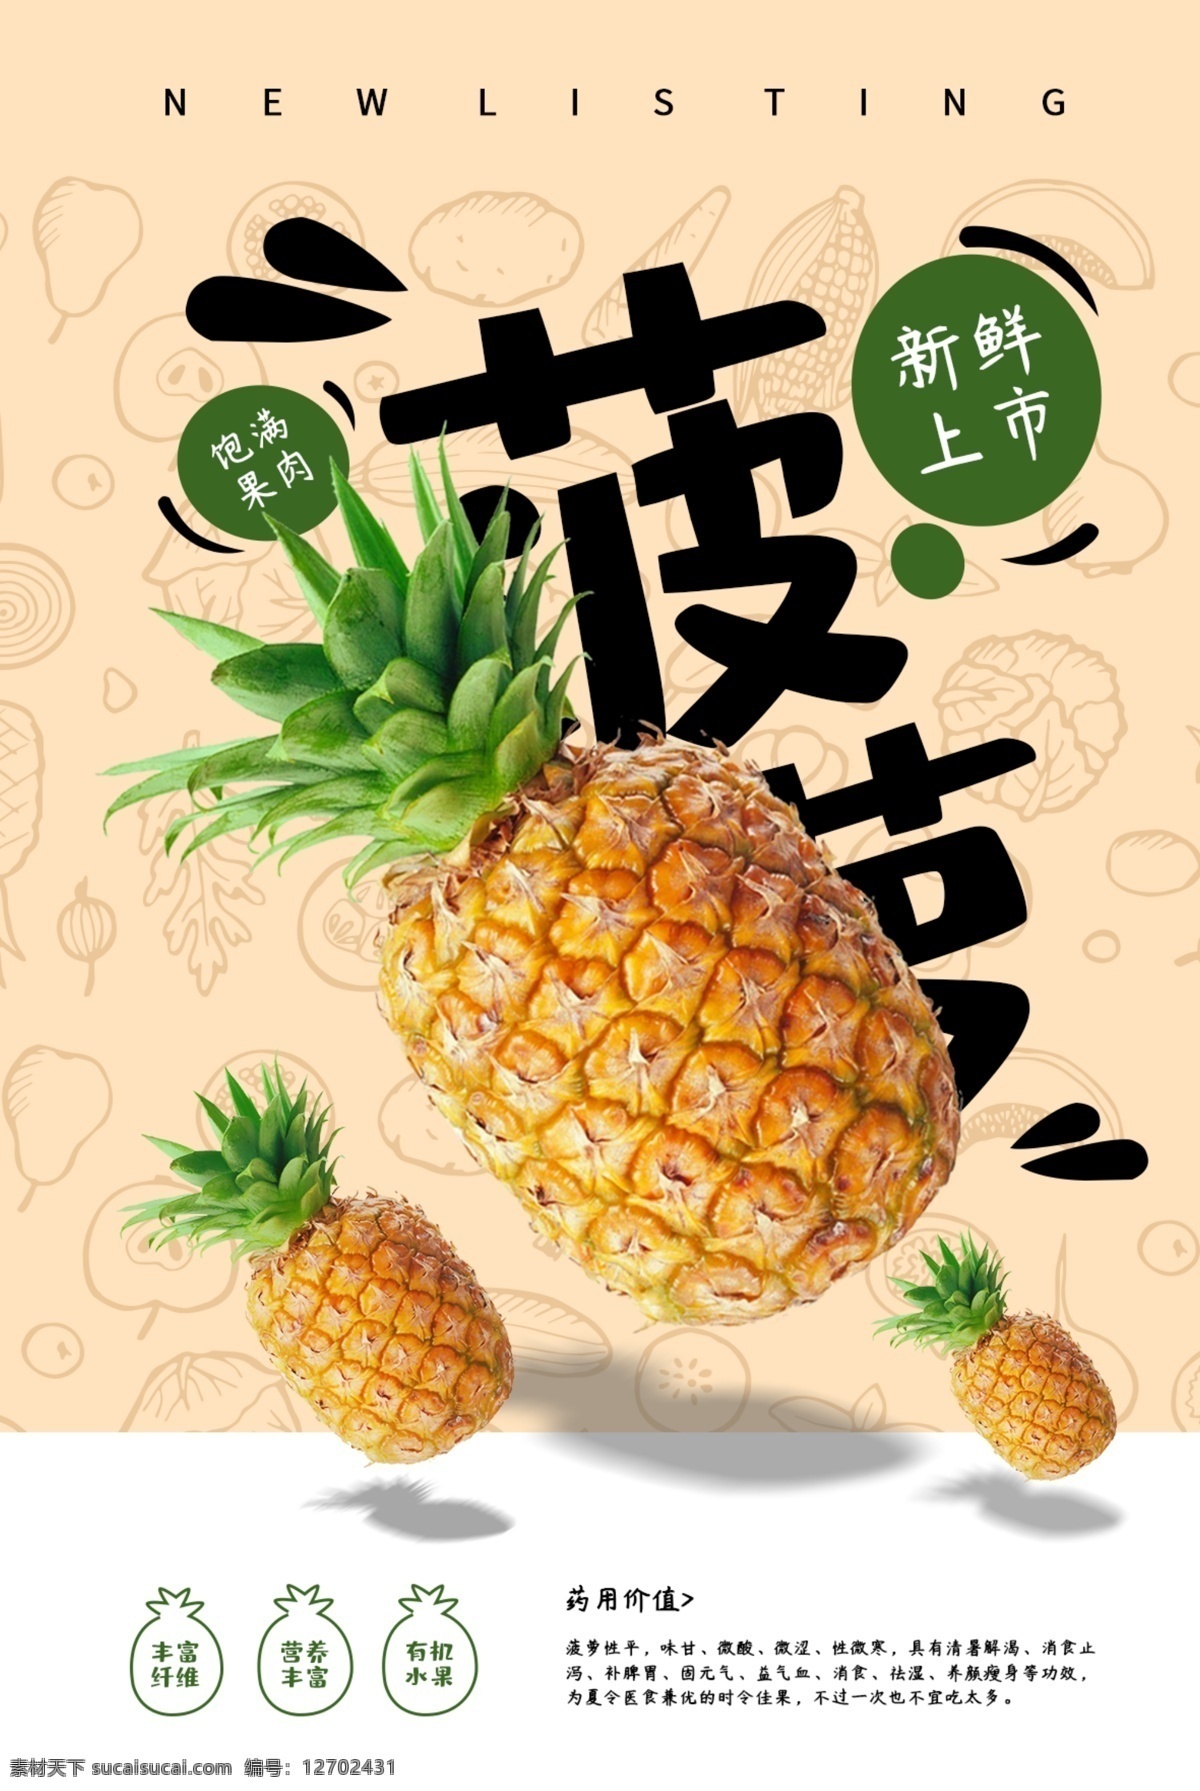 菠萝 水果 活动 促销 宣传海报 宣传 海报 饮料 饮品 甜品 类